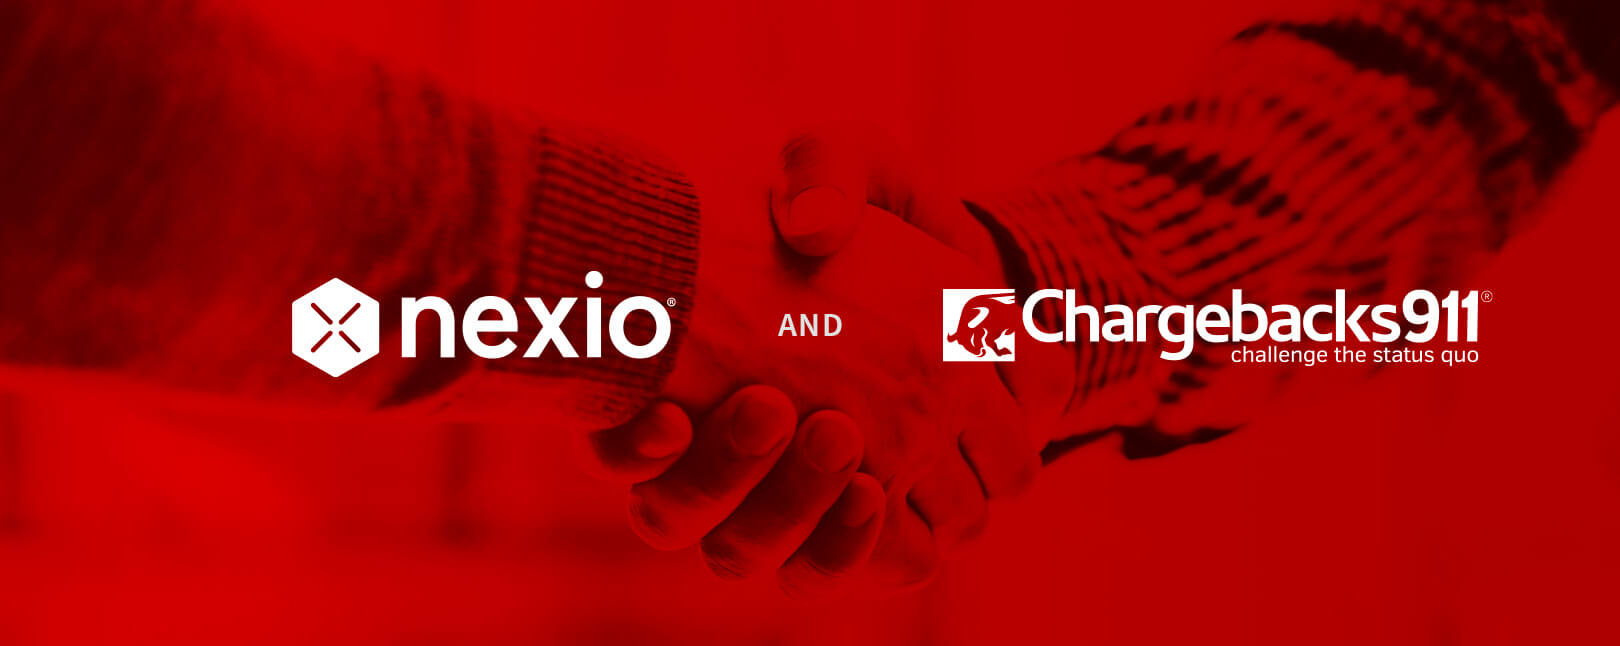 Nexio Partnership